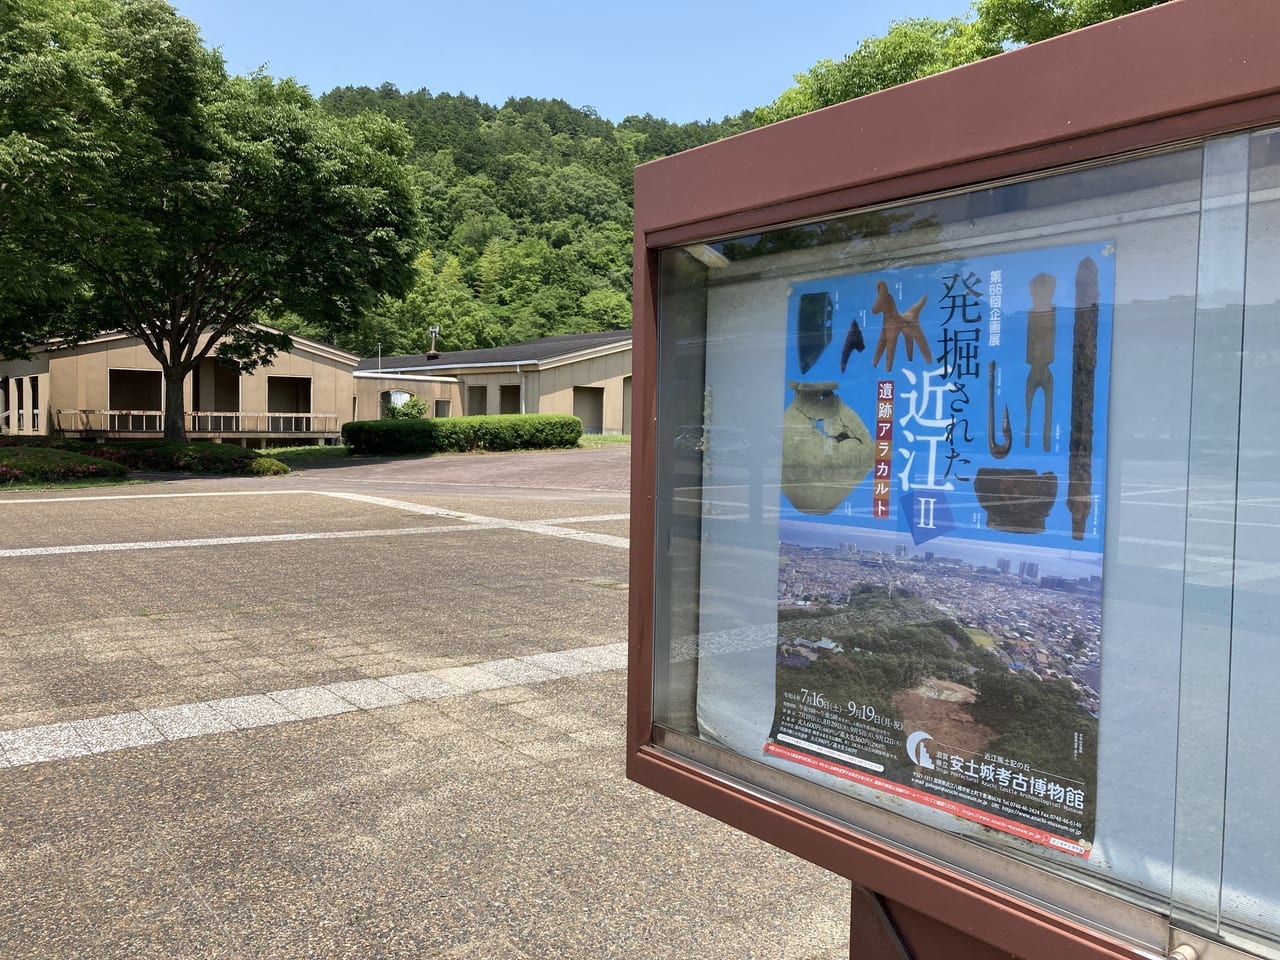 滋賀県立安土城考古博物館、お知らせ